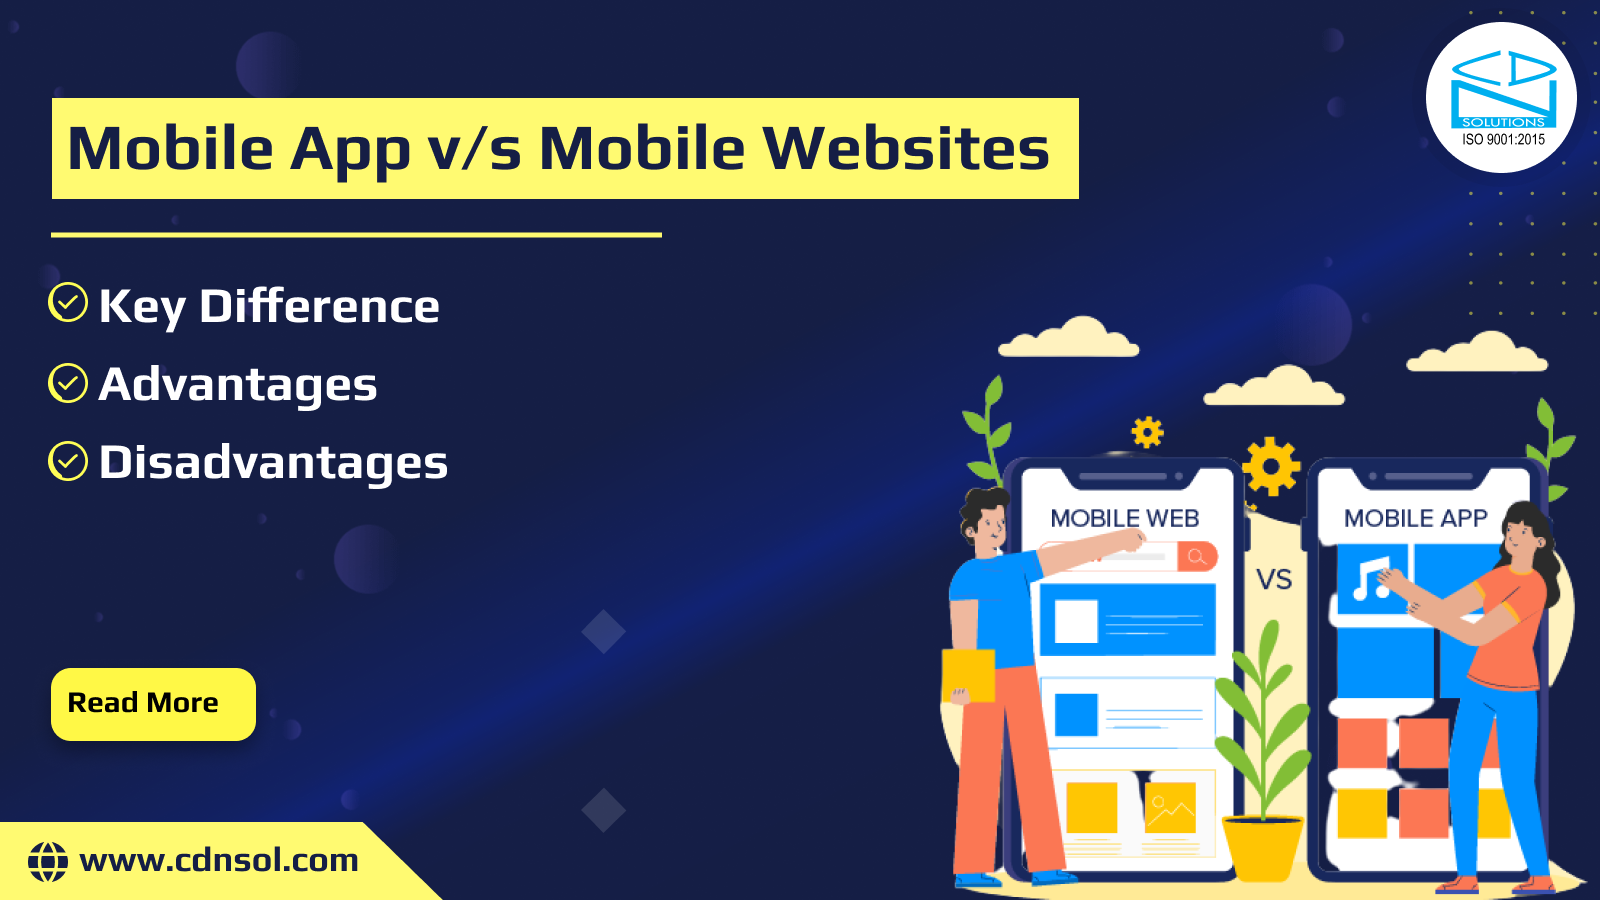 Mobile App v/s Mobile Websites Key Difference, Advantages, Disadvantages